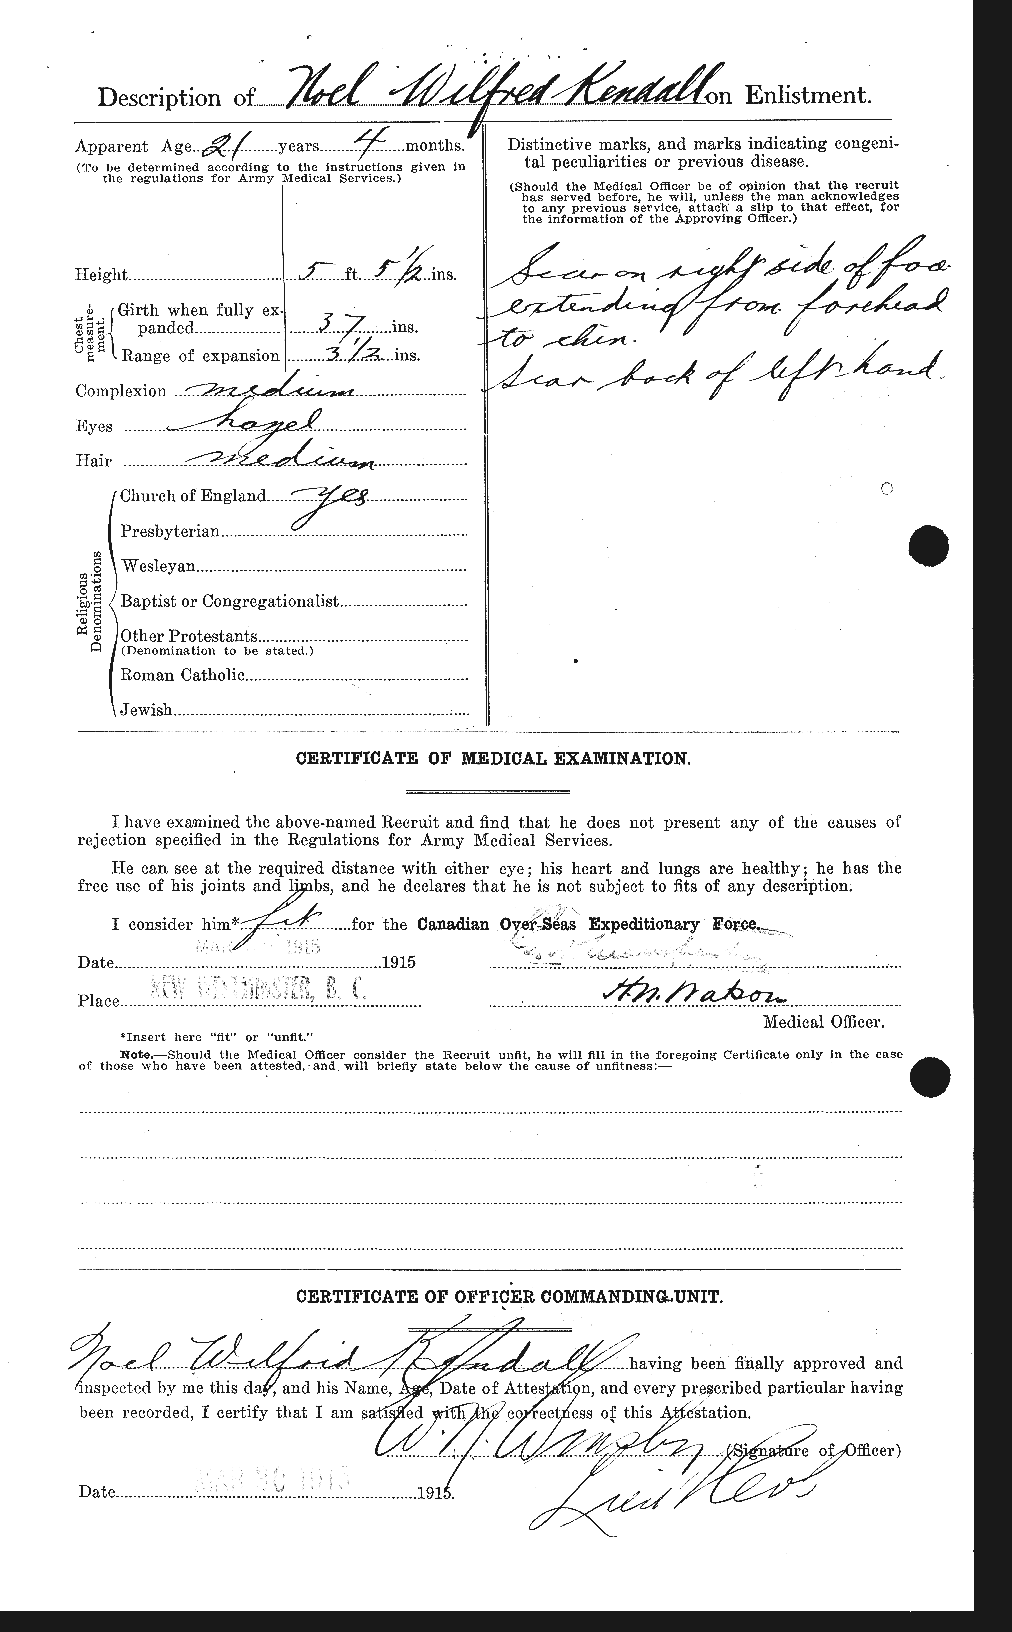 Dossiers du Personnel de la Première Guerre mondiale - CEC 435593b